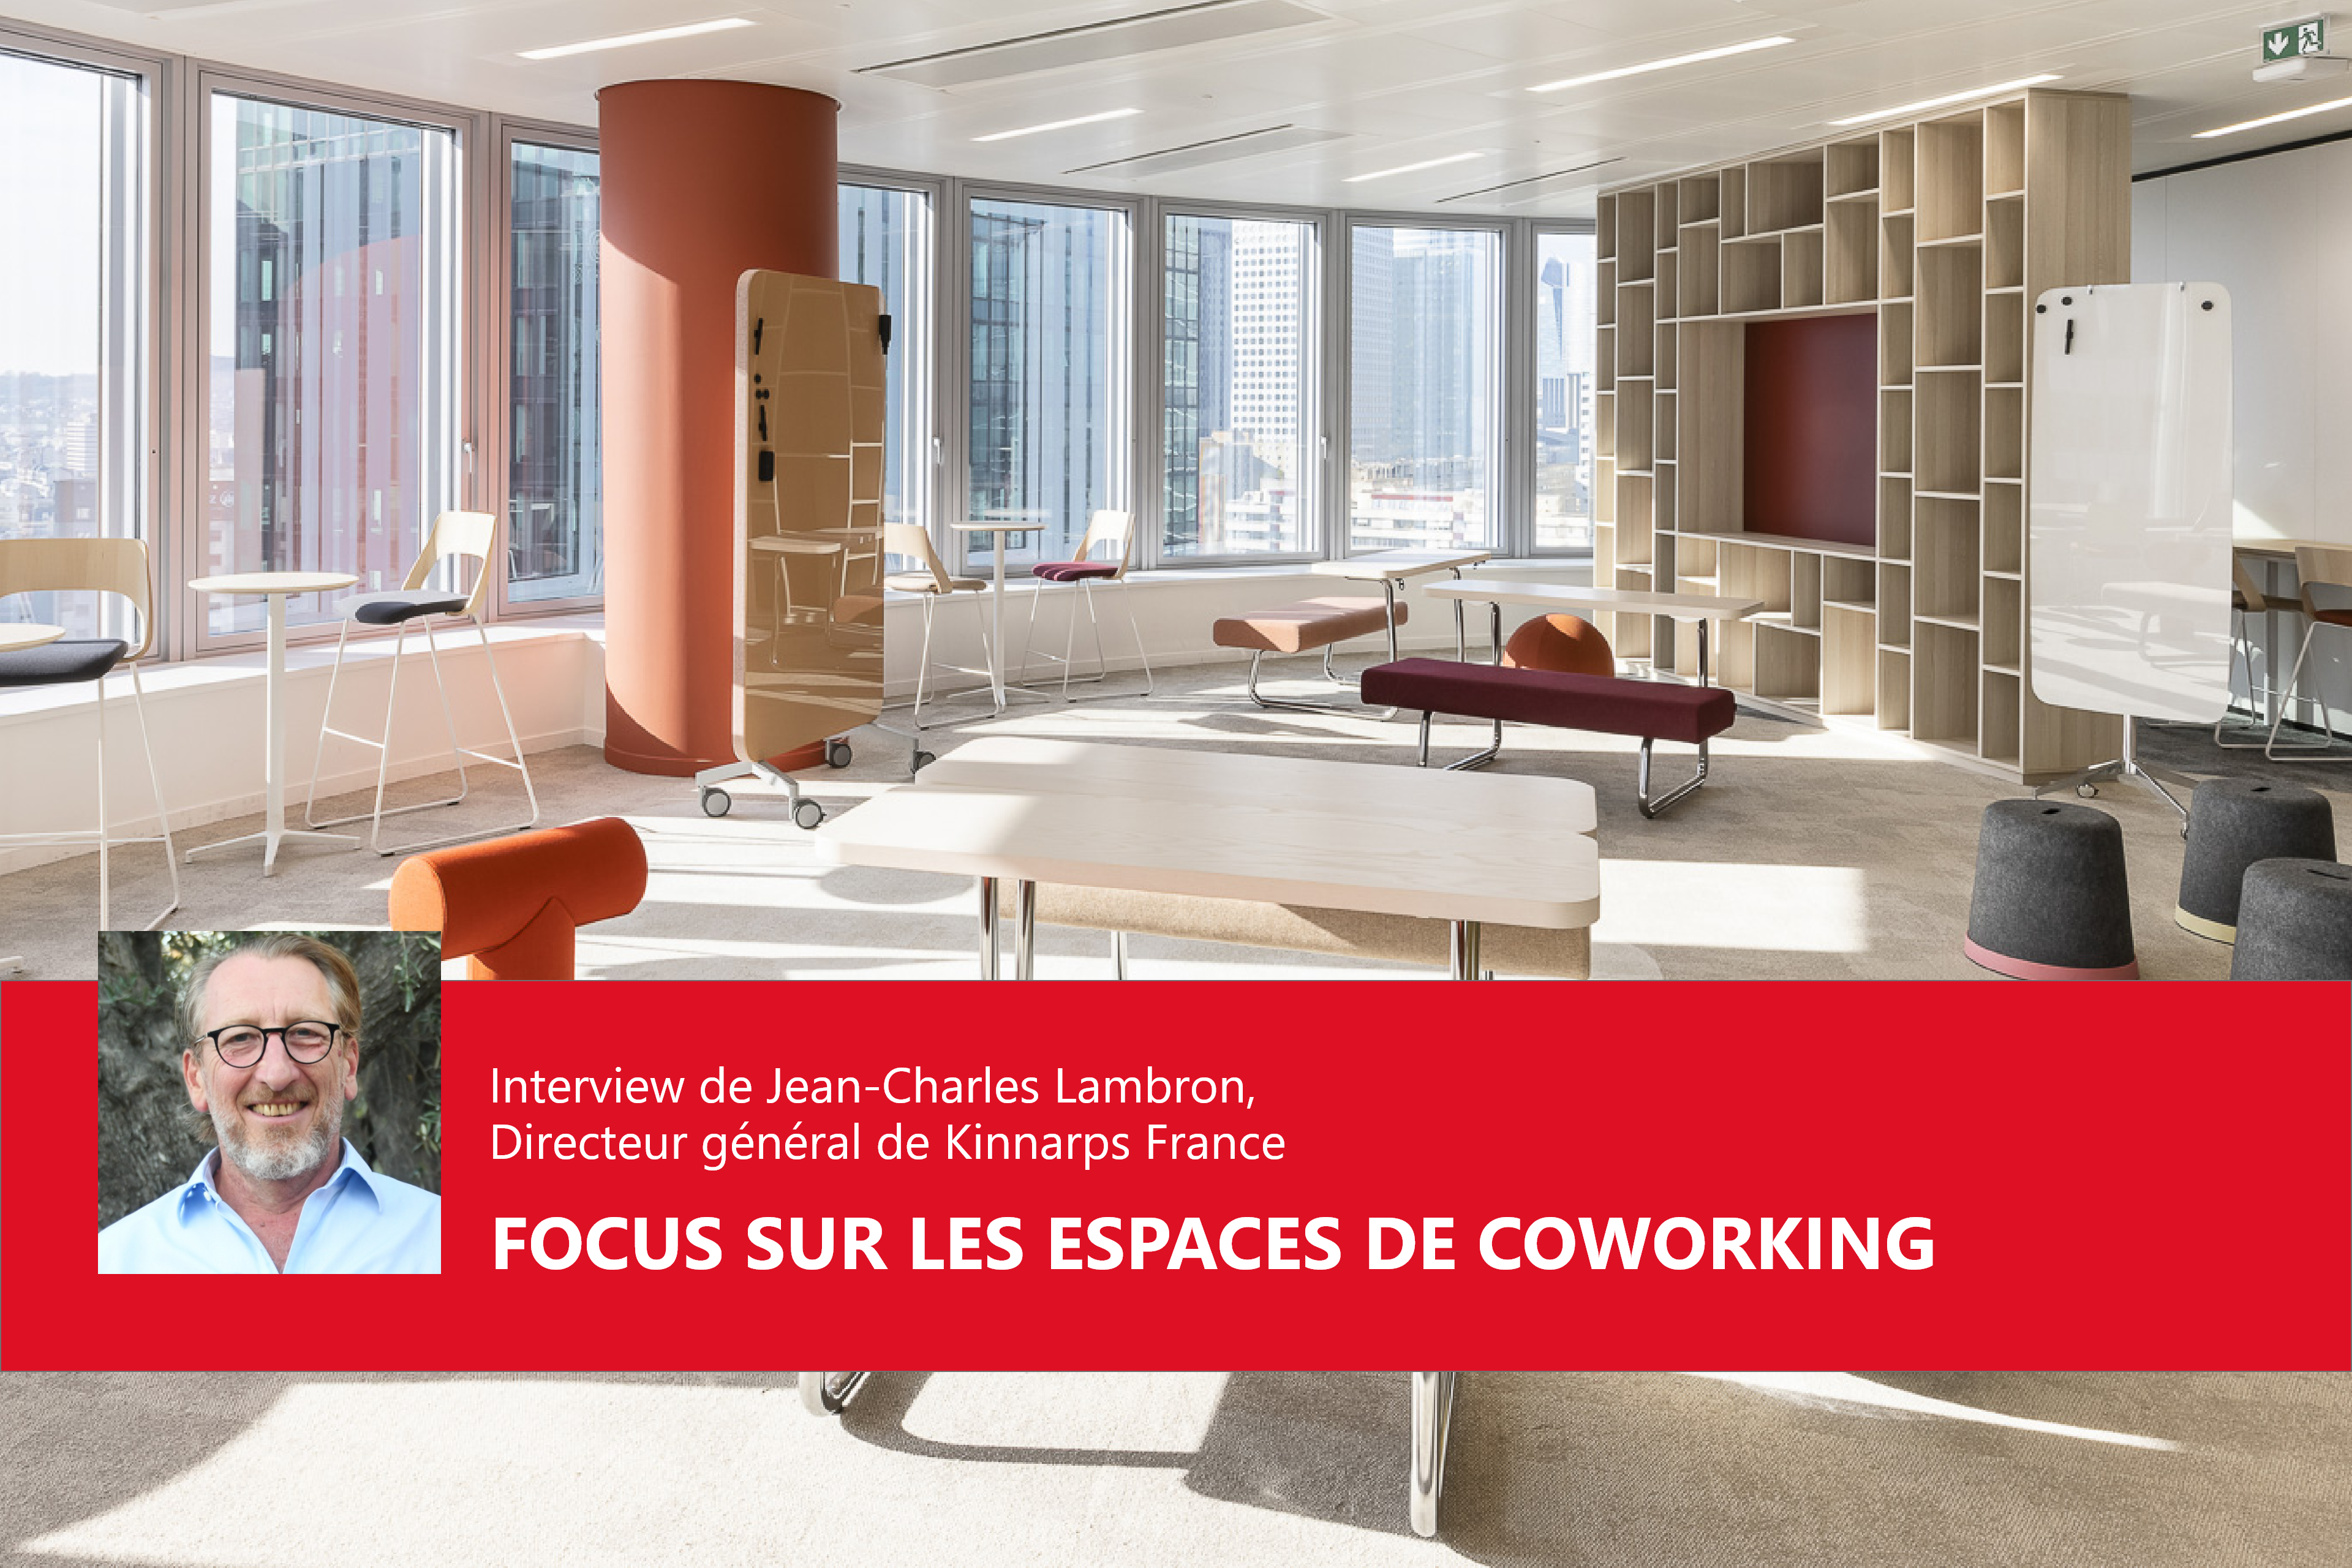 Focus sur les espaces de coworking